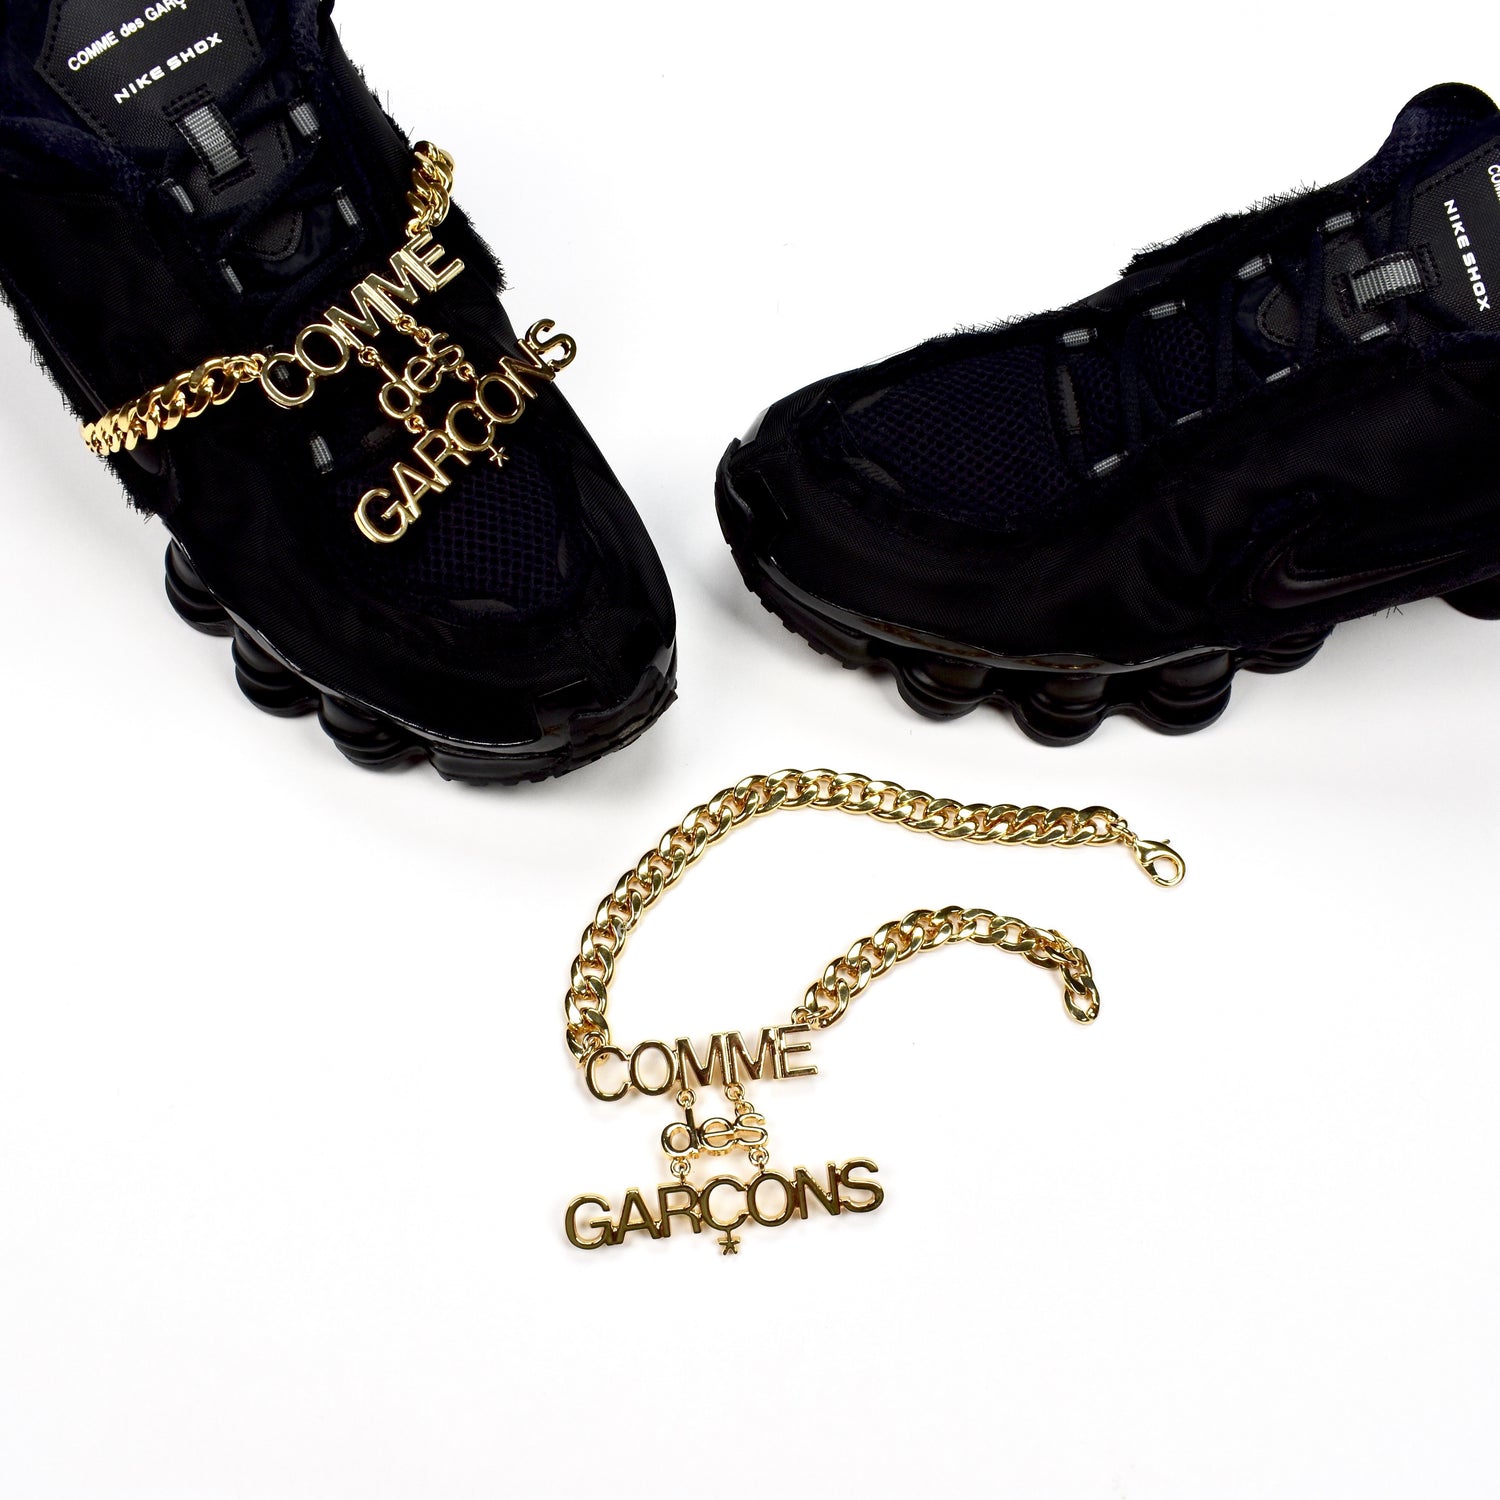 Implacable derrochador identificación Comme des Garcons x Nike - Shox TL CDG (Black) – eluXive